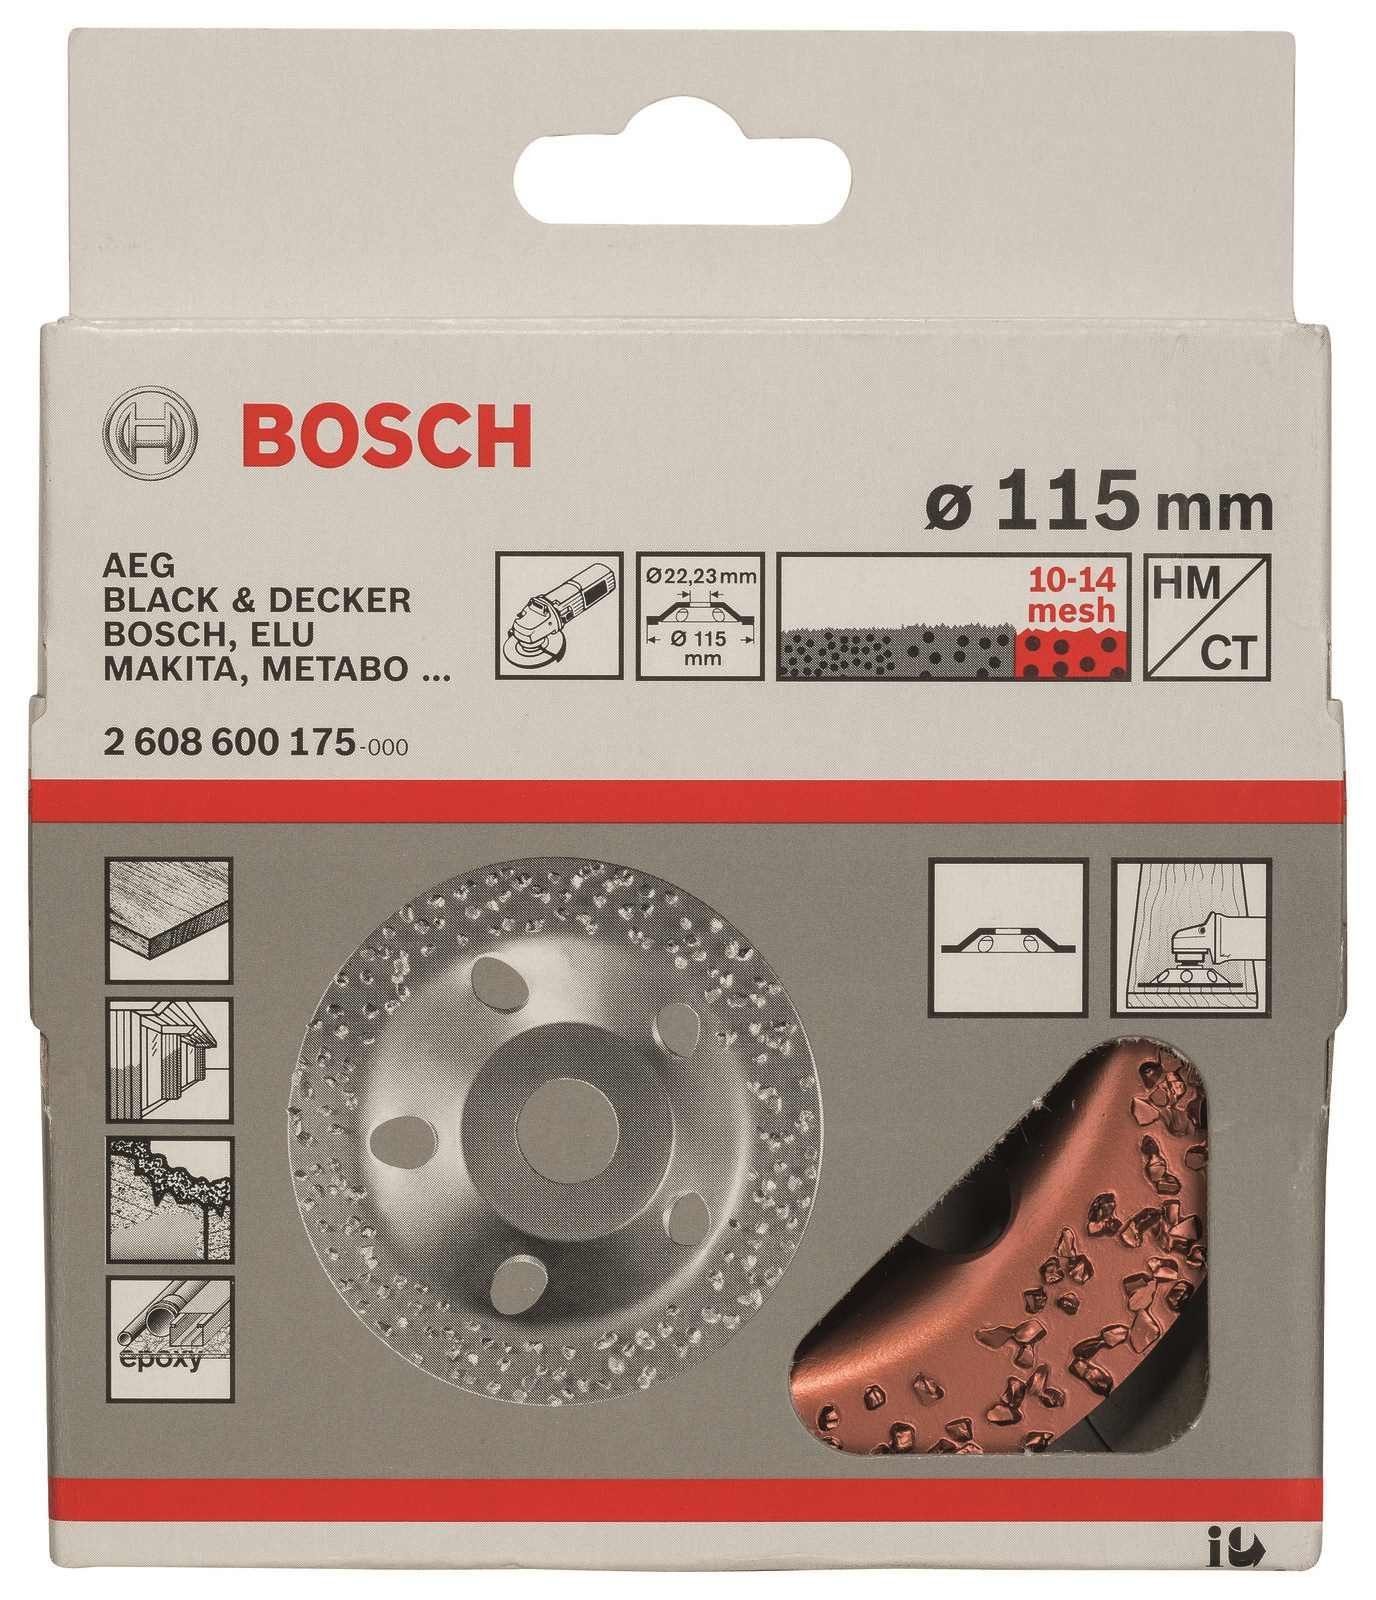 BOSCH Bohrfutter Bosch Professional Hartmetalltopfscheibe 115x22.23mm grob, 1 Stk.